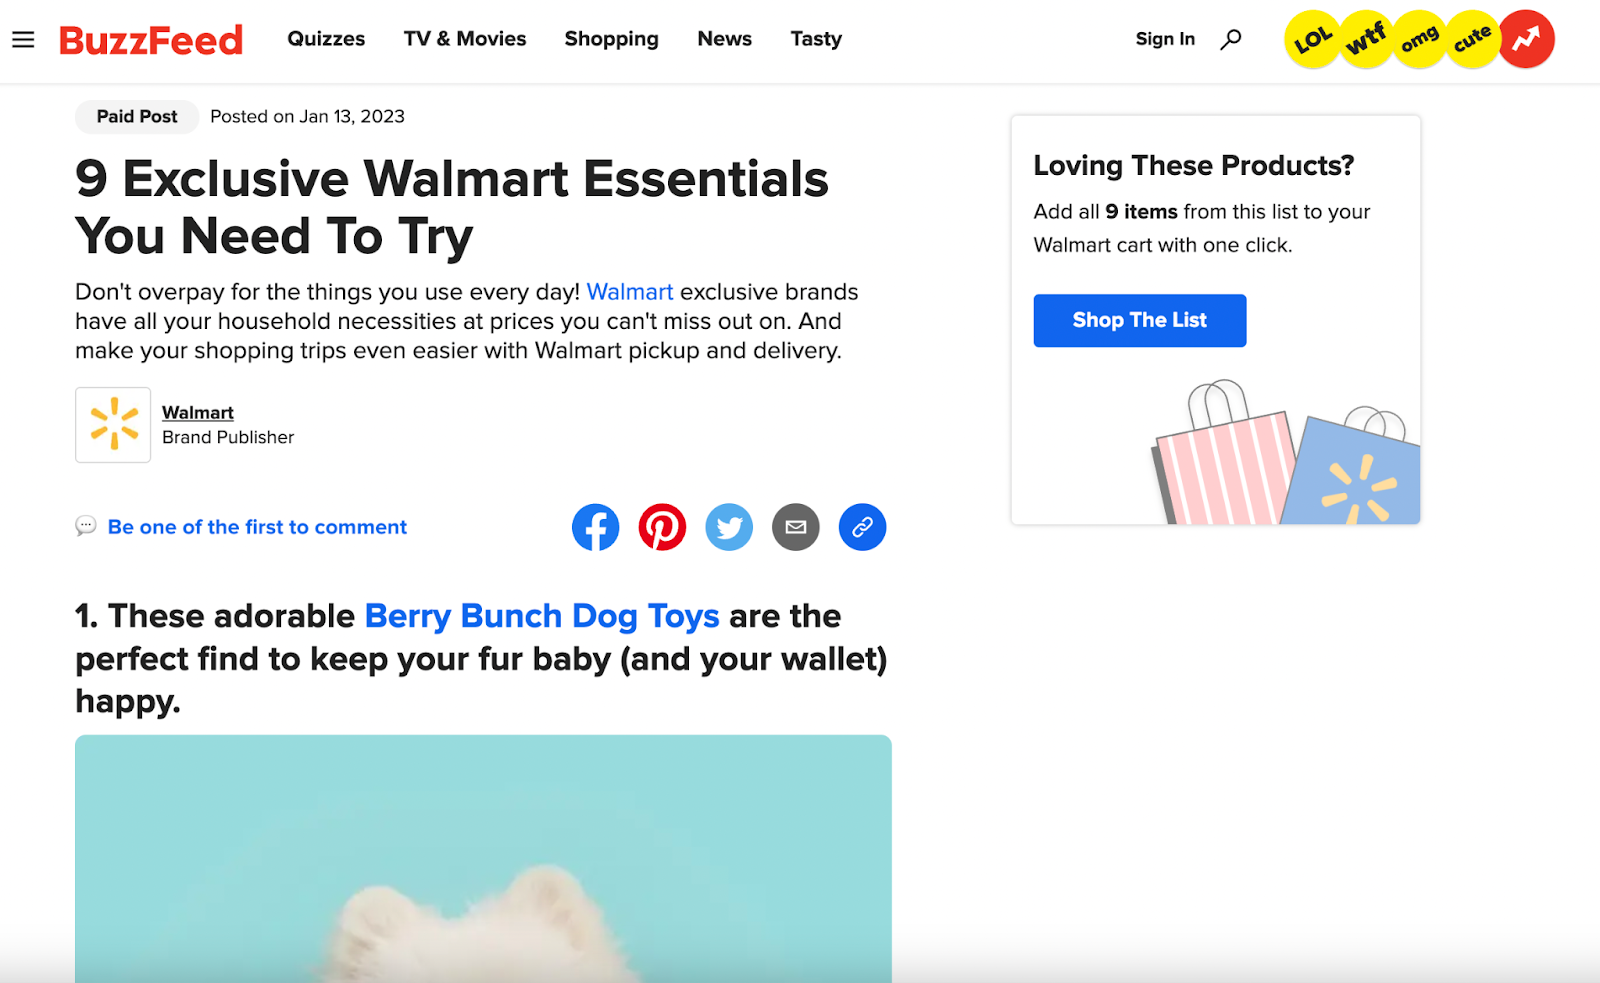 비즈니스를 위한 온라인 광고: BuzzFeed의 Walmart 네이티브 광고